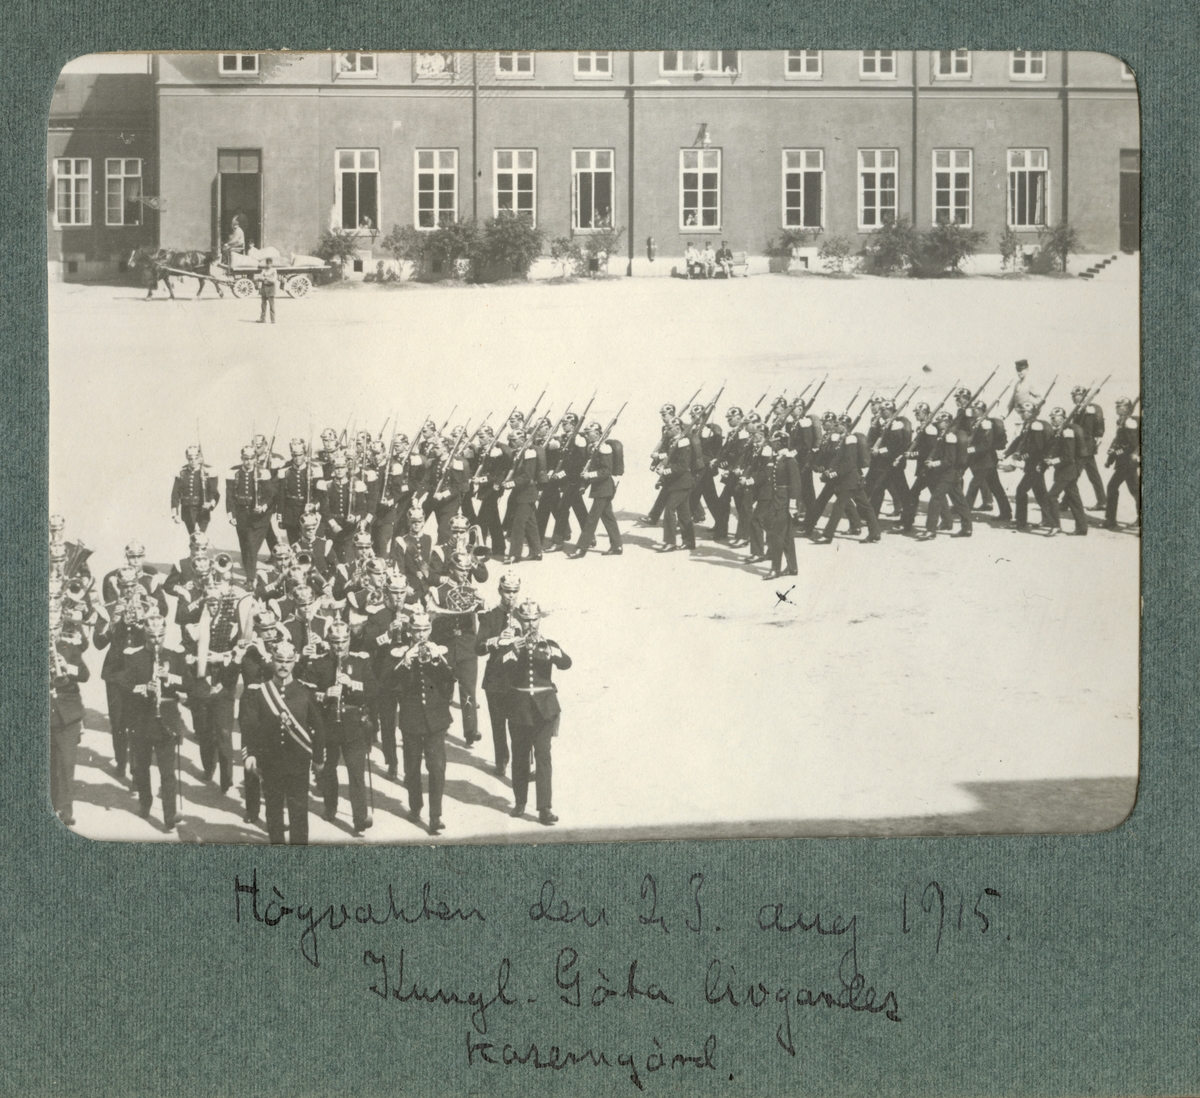 Text i fotoalbum: "Högvakten den 23. aug 1915 Kungl. Göta livgardes kaserngård".